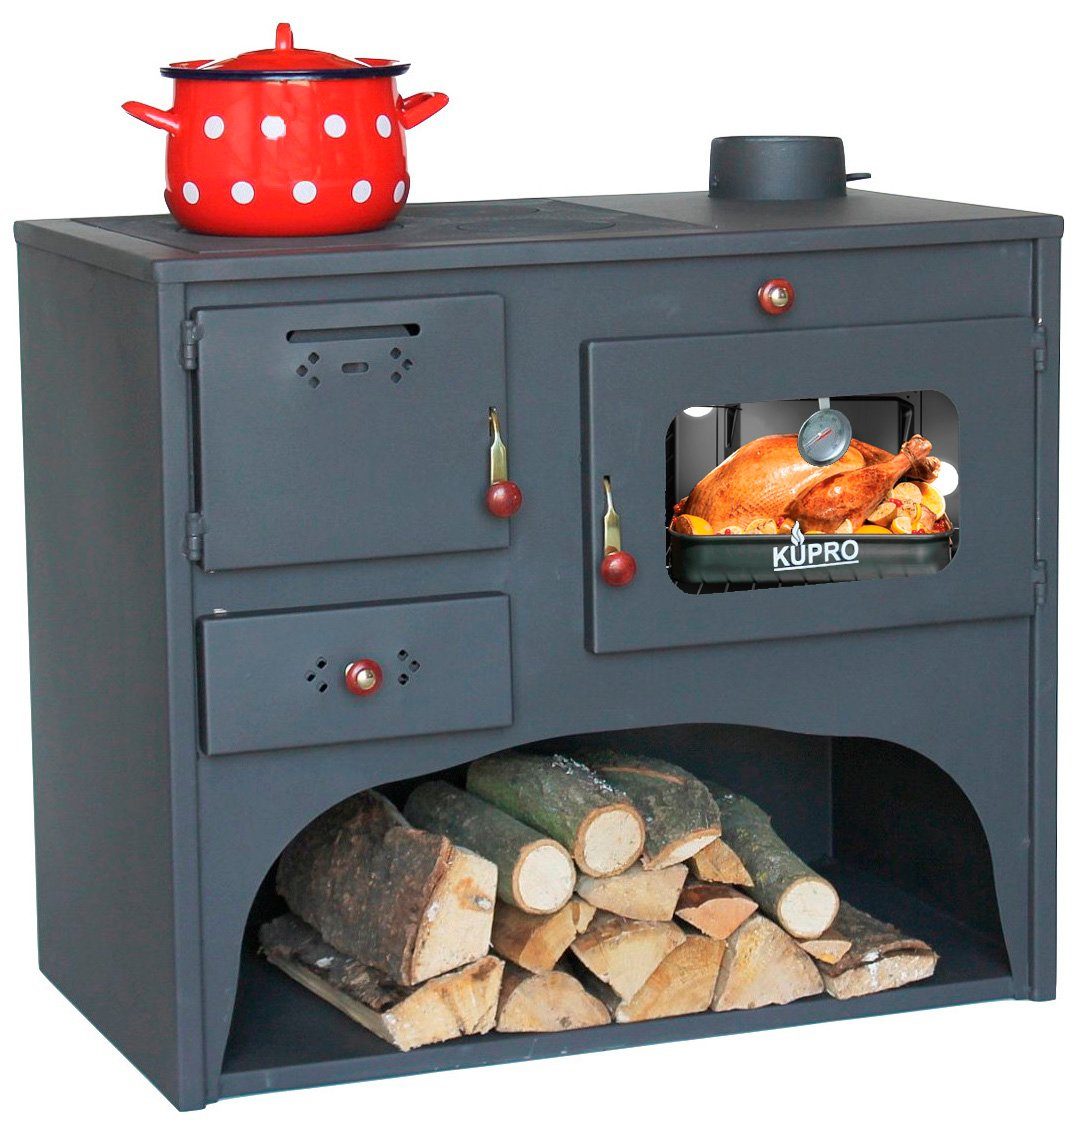 DanDiBo Grillkamin Outdoor Kaminofen mit Backfach und Herdplatte Gartenofen  Küche Ofen